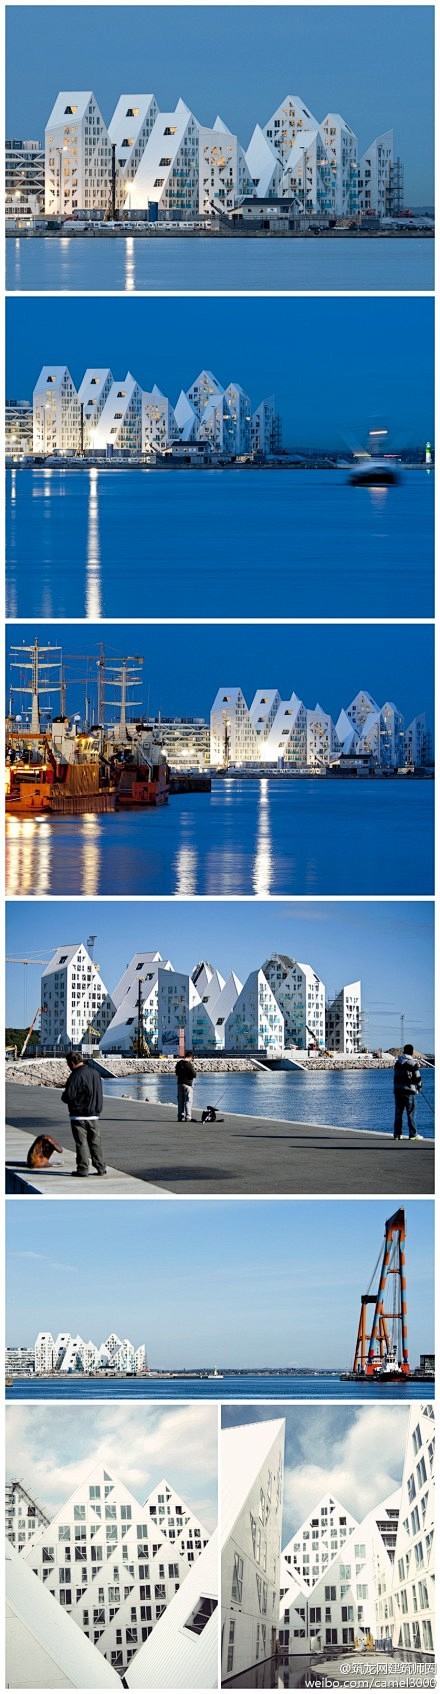 丹麦冰山住宅。建筑的形式和名称都来自于冰...